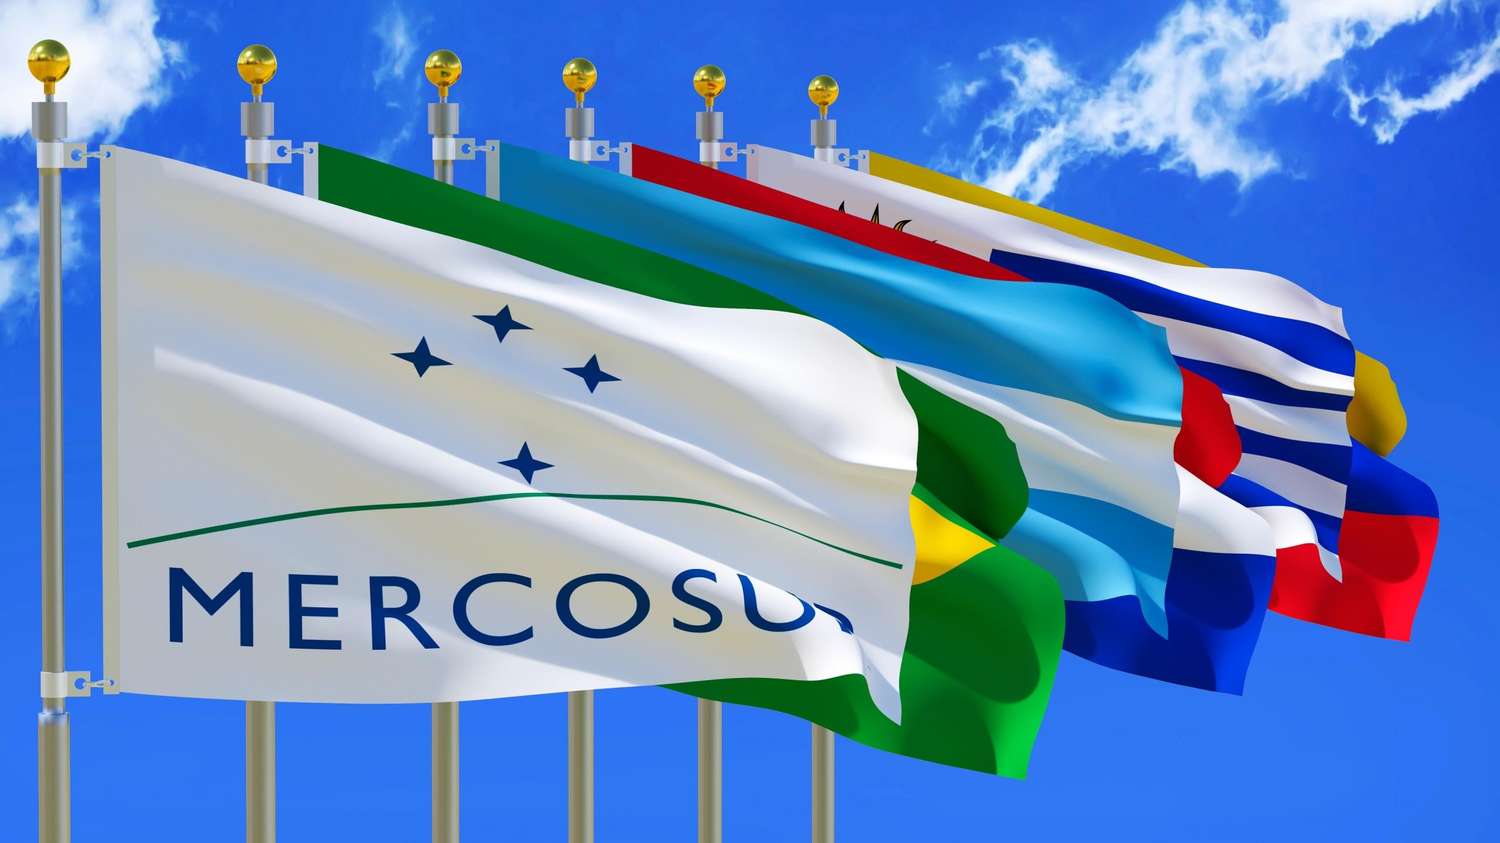 Francisco Bustillo, planteó una propuesta ambiciosa: la creación de la "Zona Común del Sur (Zocosur)" como un mecanismo para agilizar el comercio en la región, mientras se discuten los avances del Mercosur.